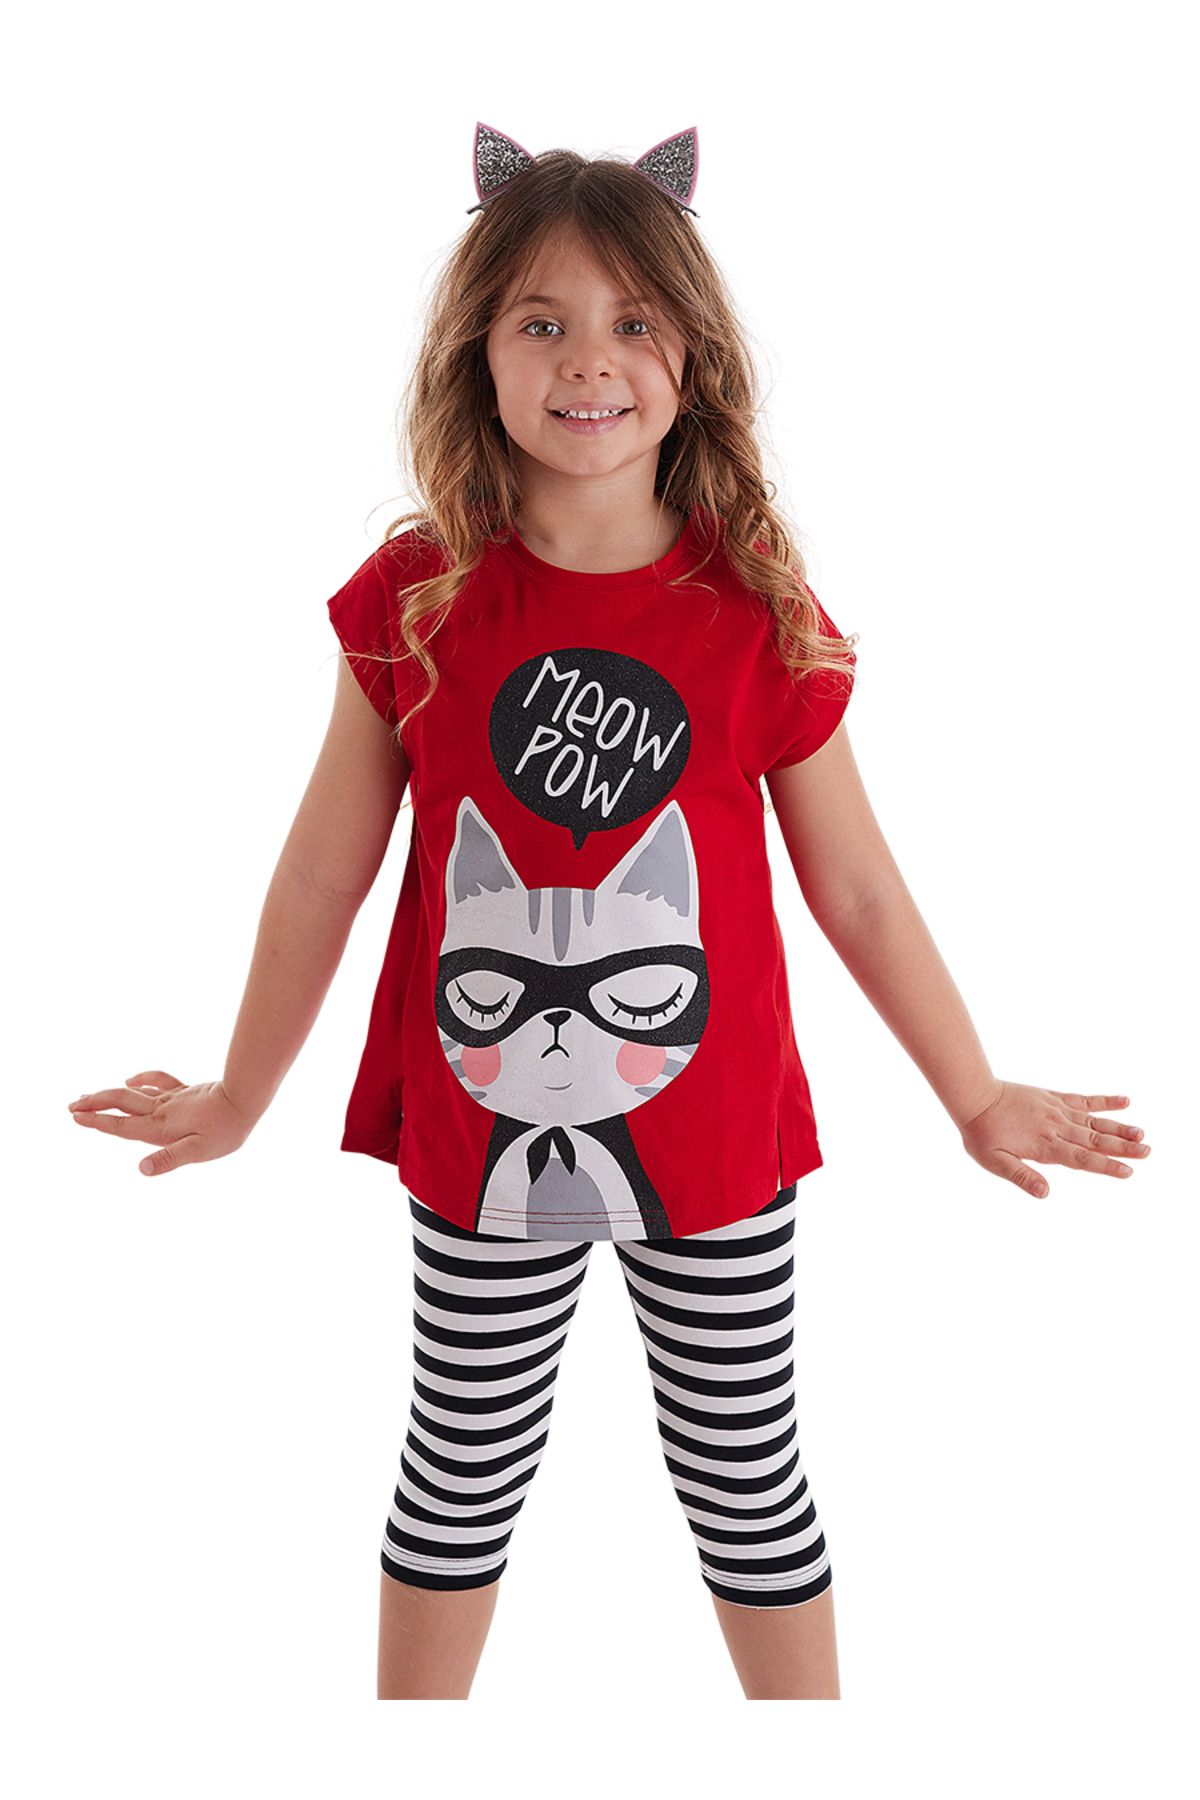 MSHB&G Meow Pow Kız Çocuk T-shirt Tayt Takım